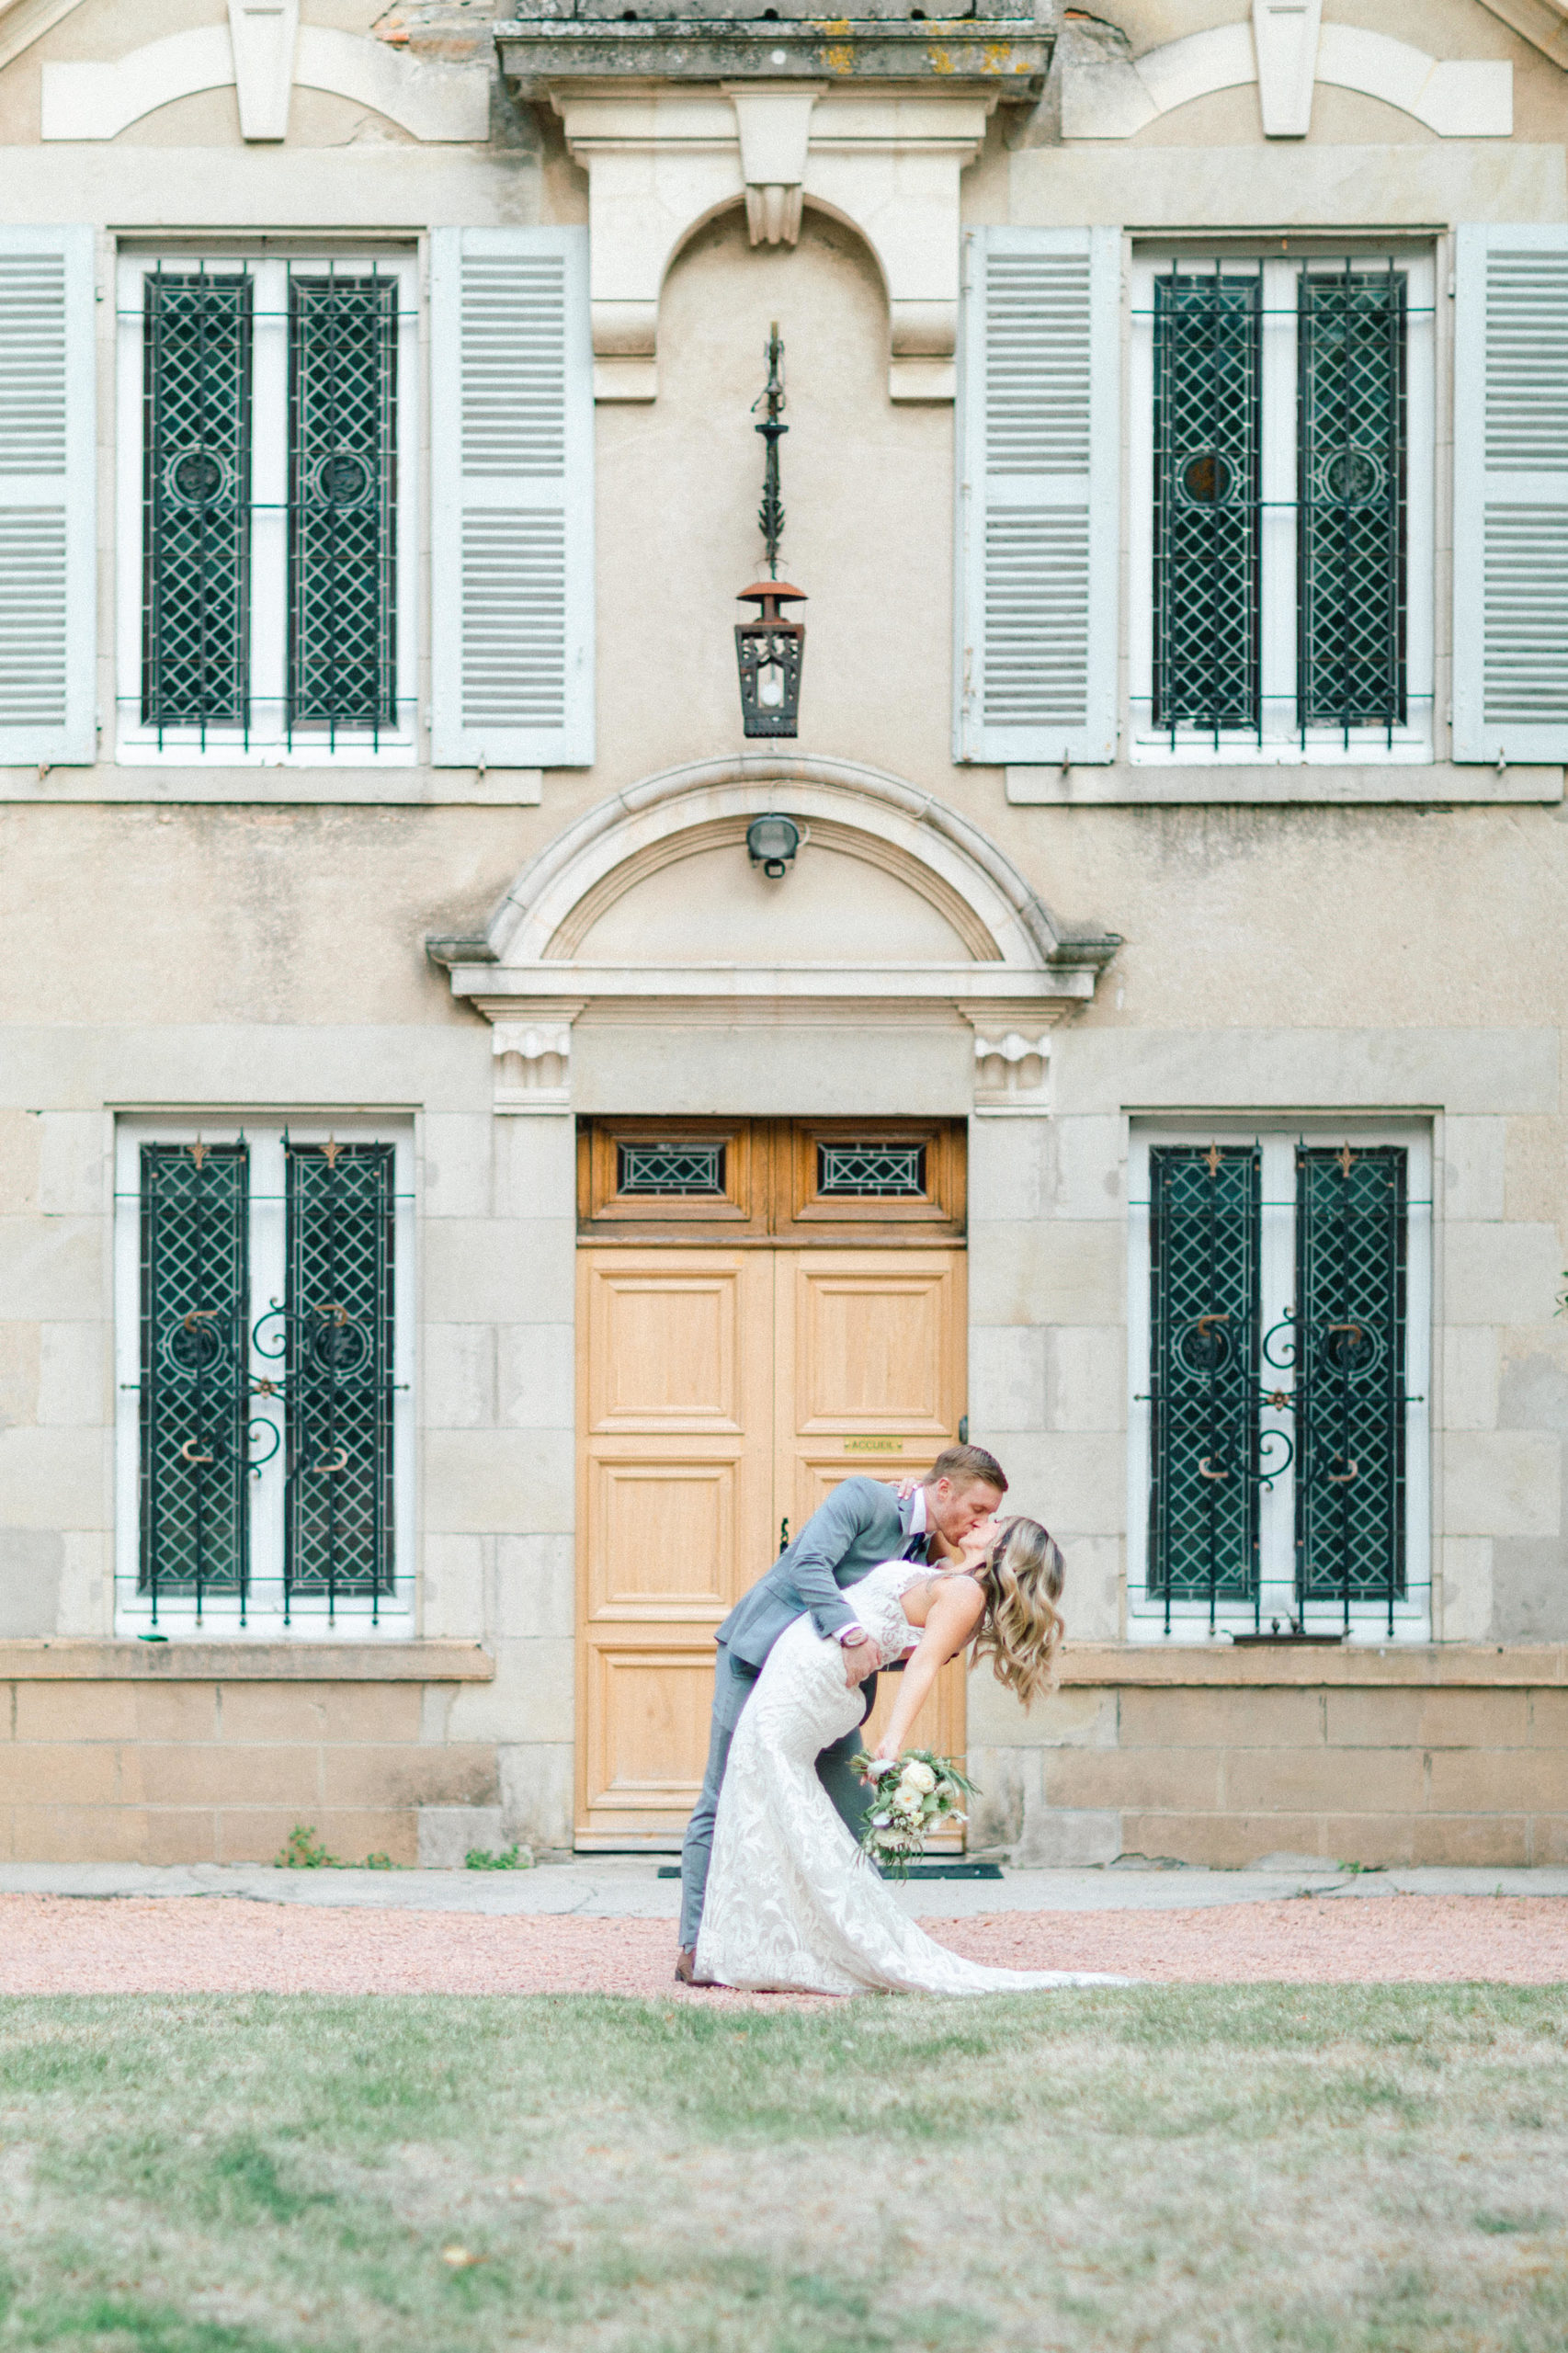 Lyloo & Maloé, Wedding Planner Lyon, Organisation de mariages en France et à l'étranger